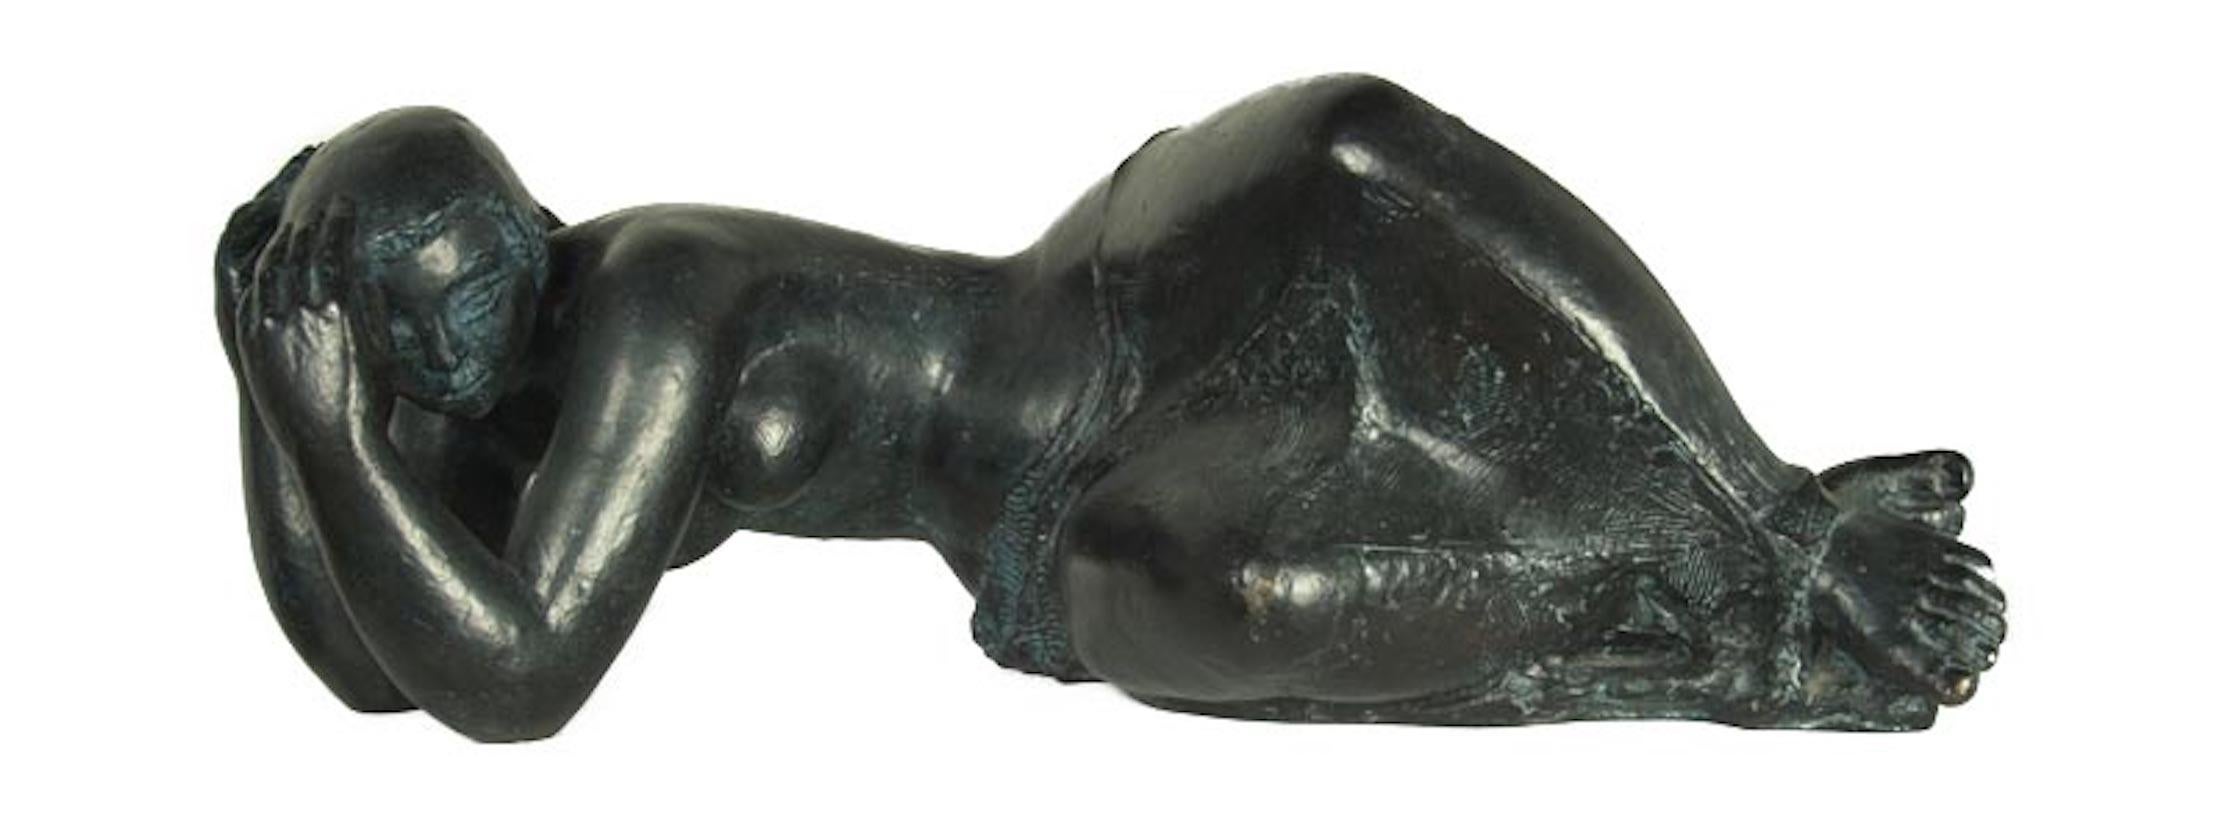 Figurative Sculpture Antoniucci Volti - « Femme de Tours », bronze, sculpture figurative féminine couchée